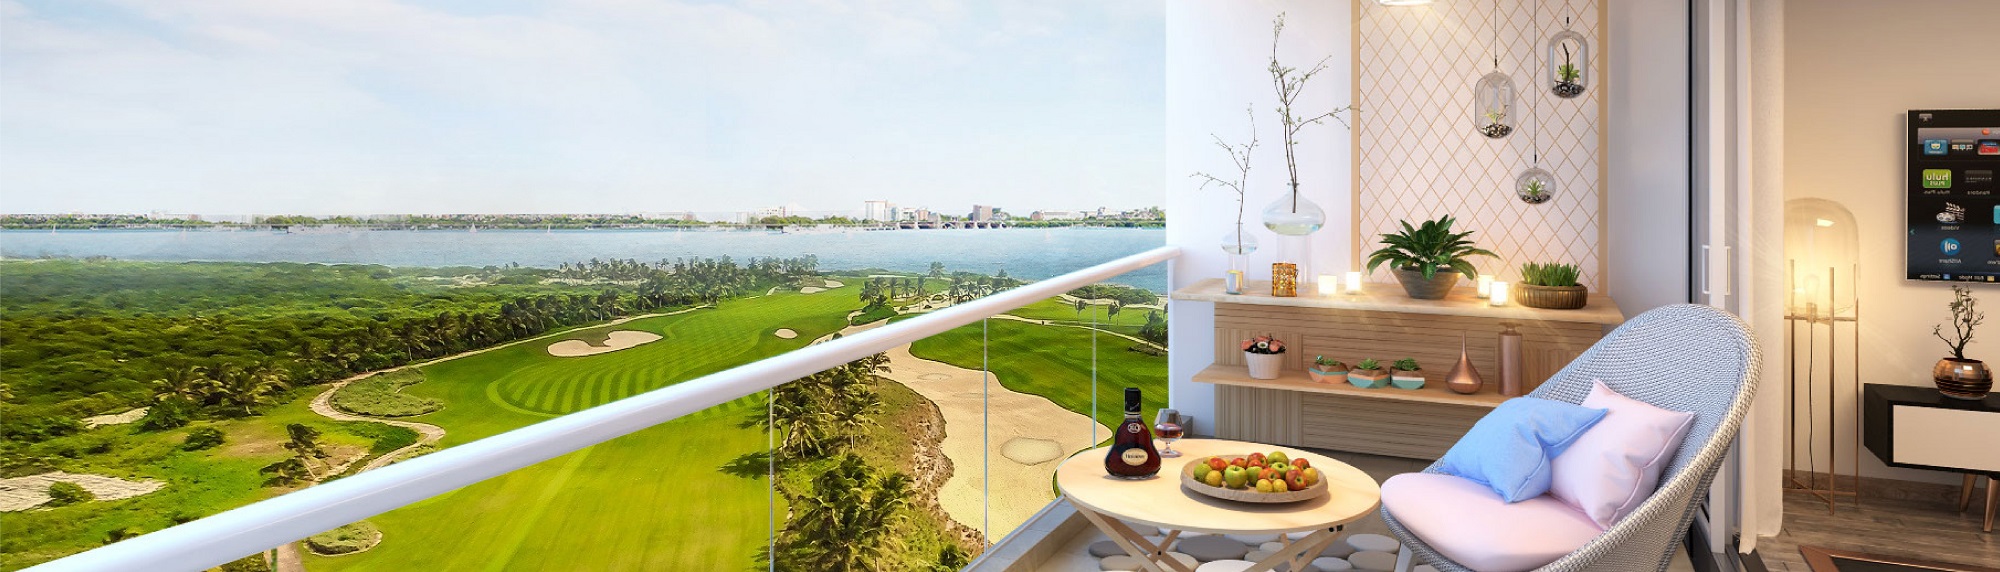 Chính thức ra mắt dự án Golf View Luxury tại Đà Nẵng